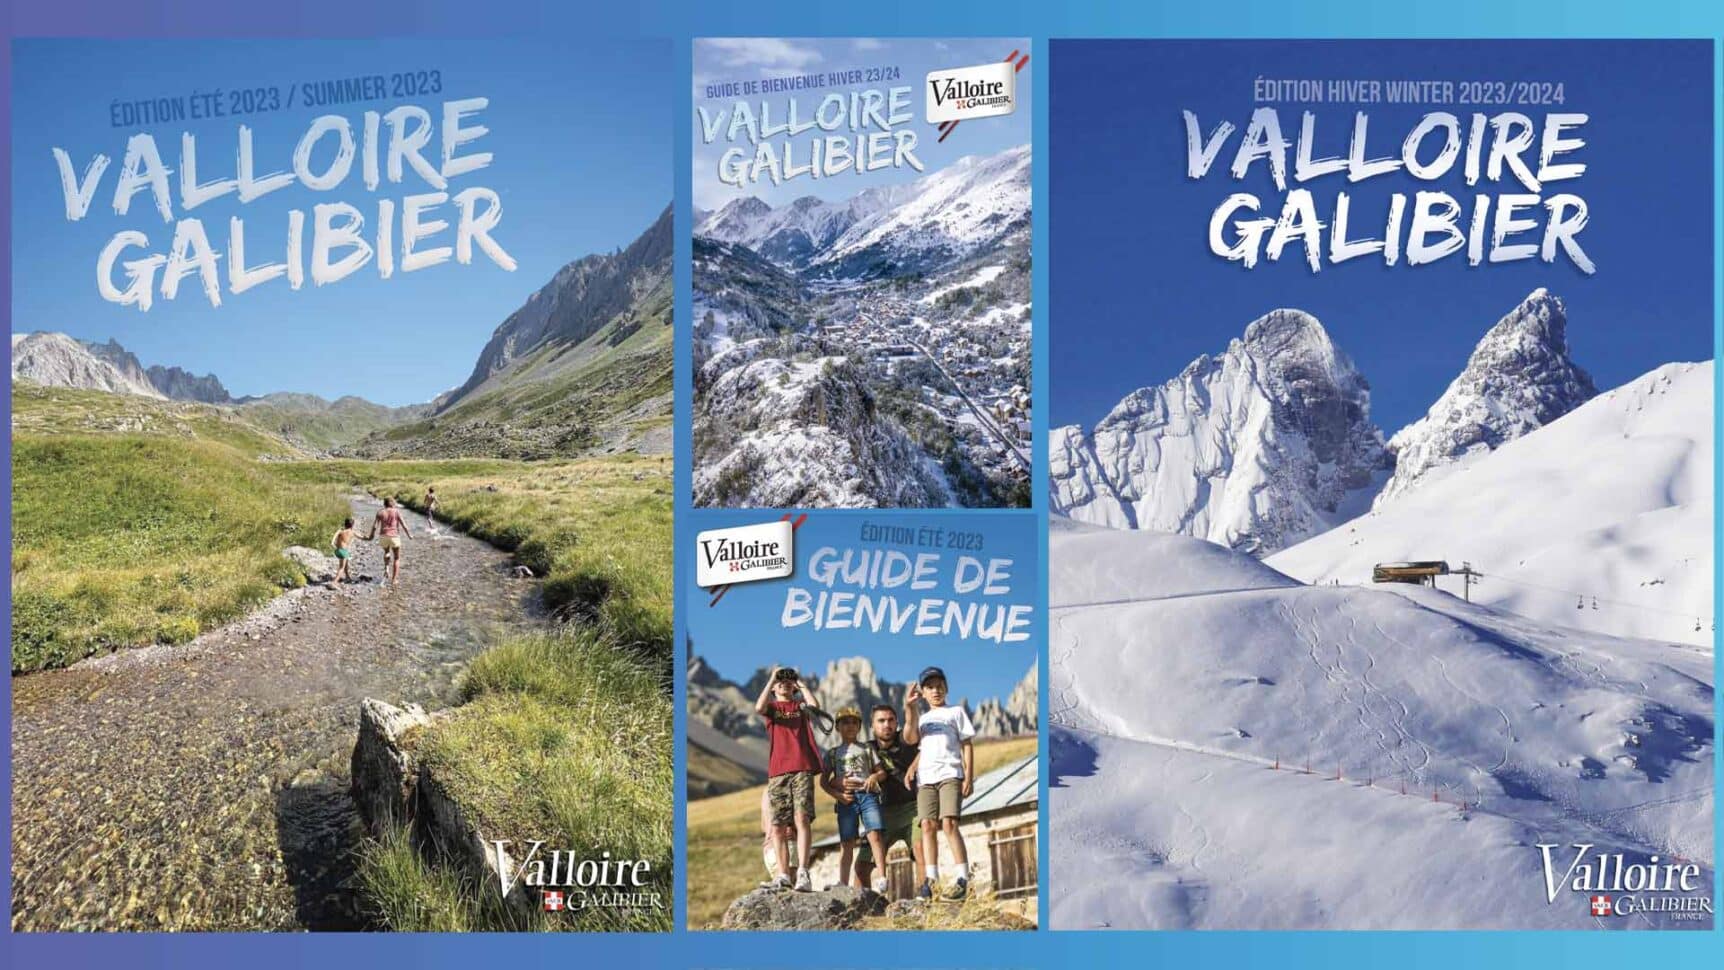 documentation guide de vacances à valloire en Savoir pour l'été et l'hiver